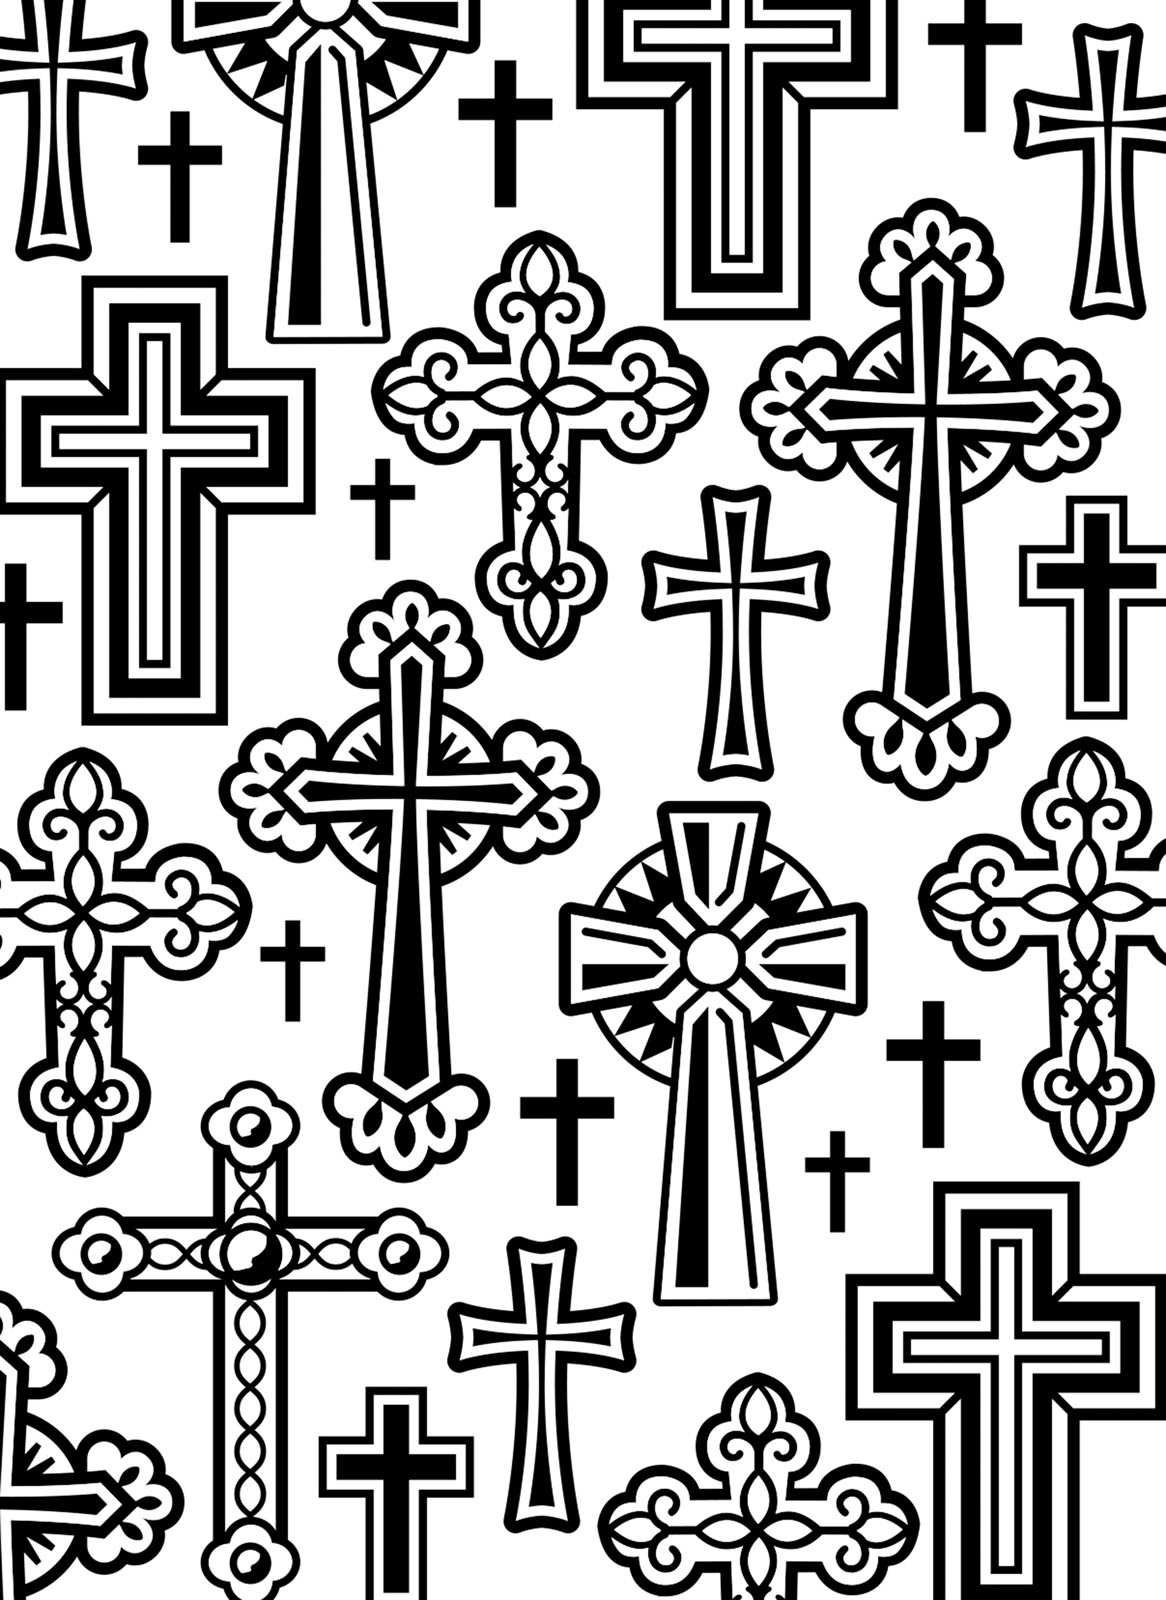 Darice • Embossing folder crosses